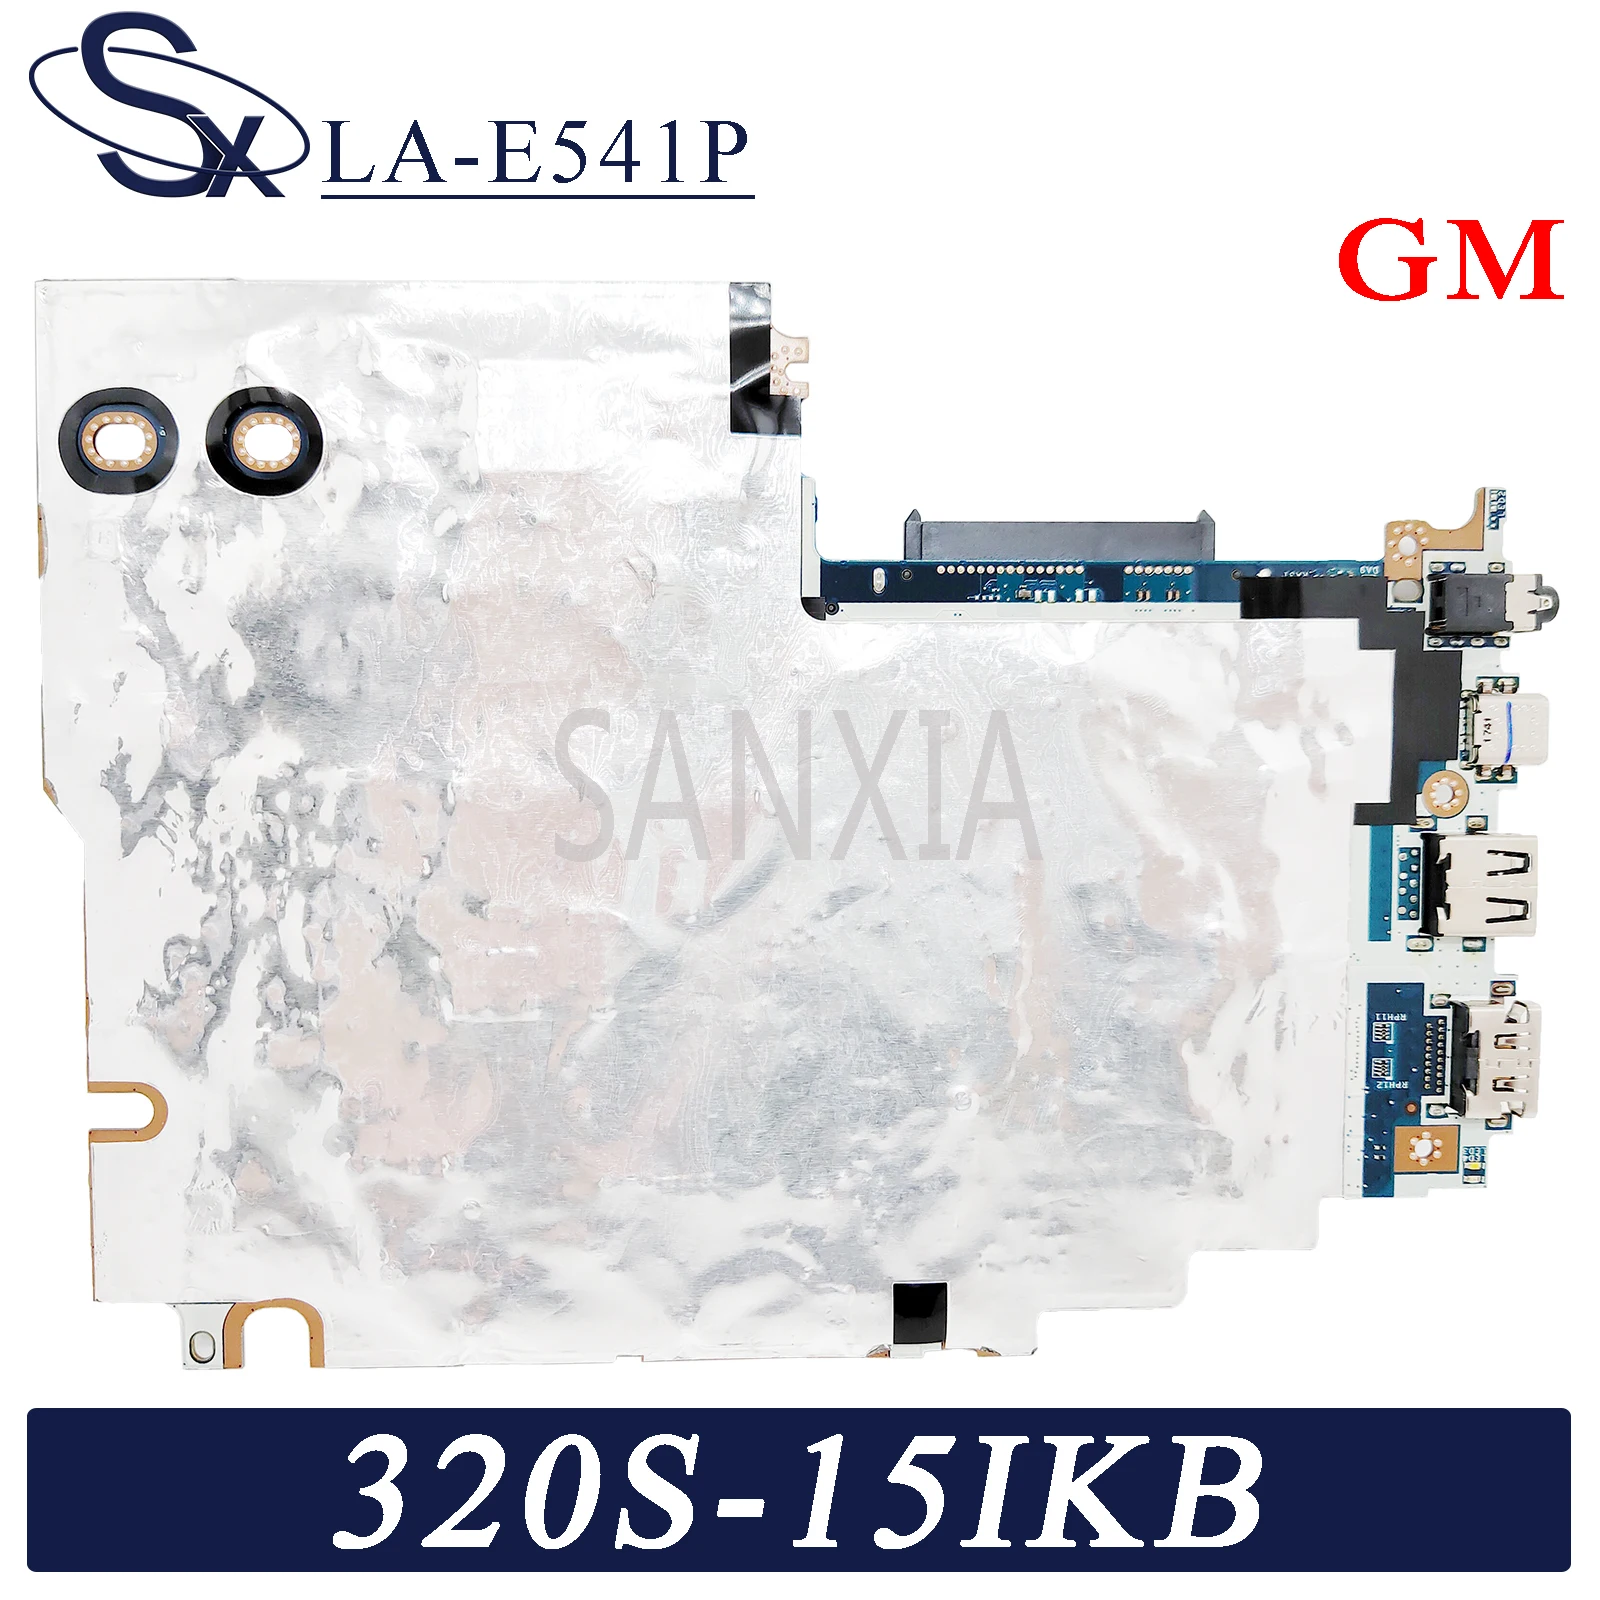 US $2.304.00 Deviser AE3100B SM OTDR 13101550nm 3432dbsupport VFLpower meterlight sourcefiberpass